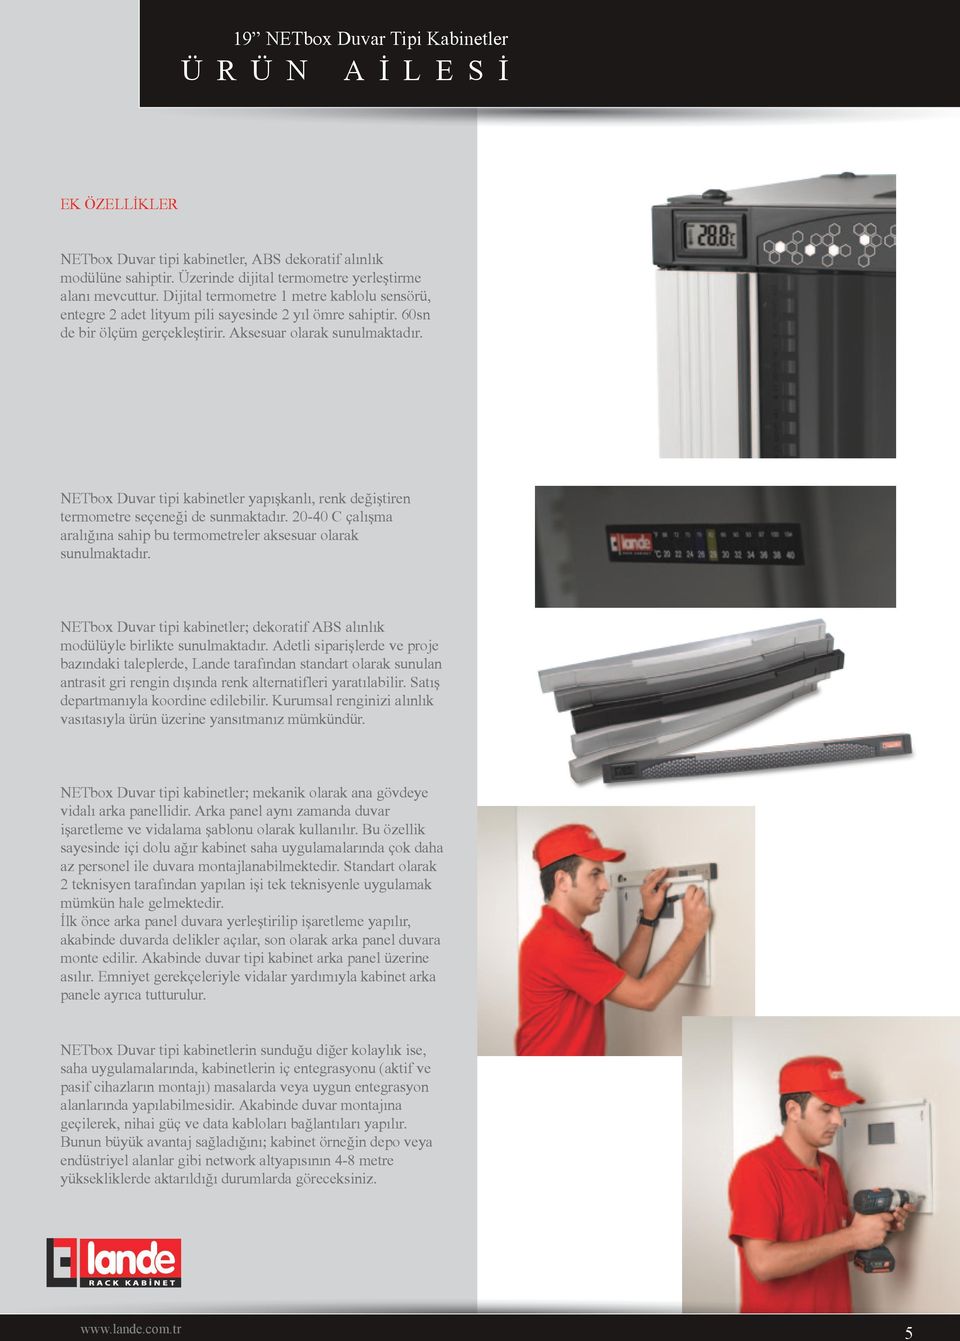 NETbox Duvar tipi kabinetler yapışkanlı, renk değiştiren termometre seçeneği de sunmaktadır. 20-40 C çalışma aralığına sahip bu termometreler aksesuar olarak sunulmaktadır.